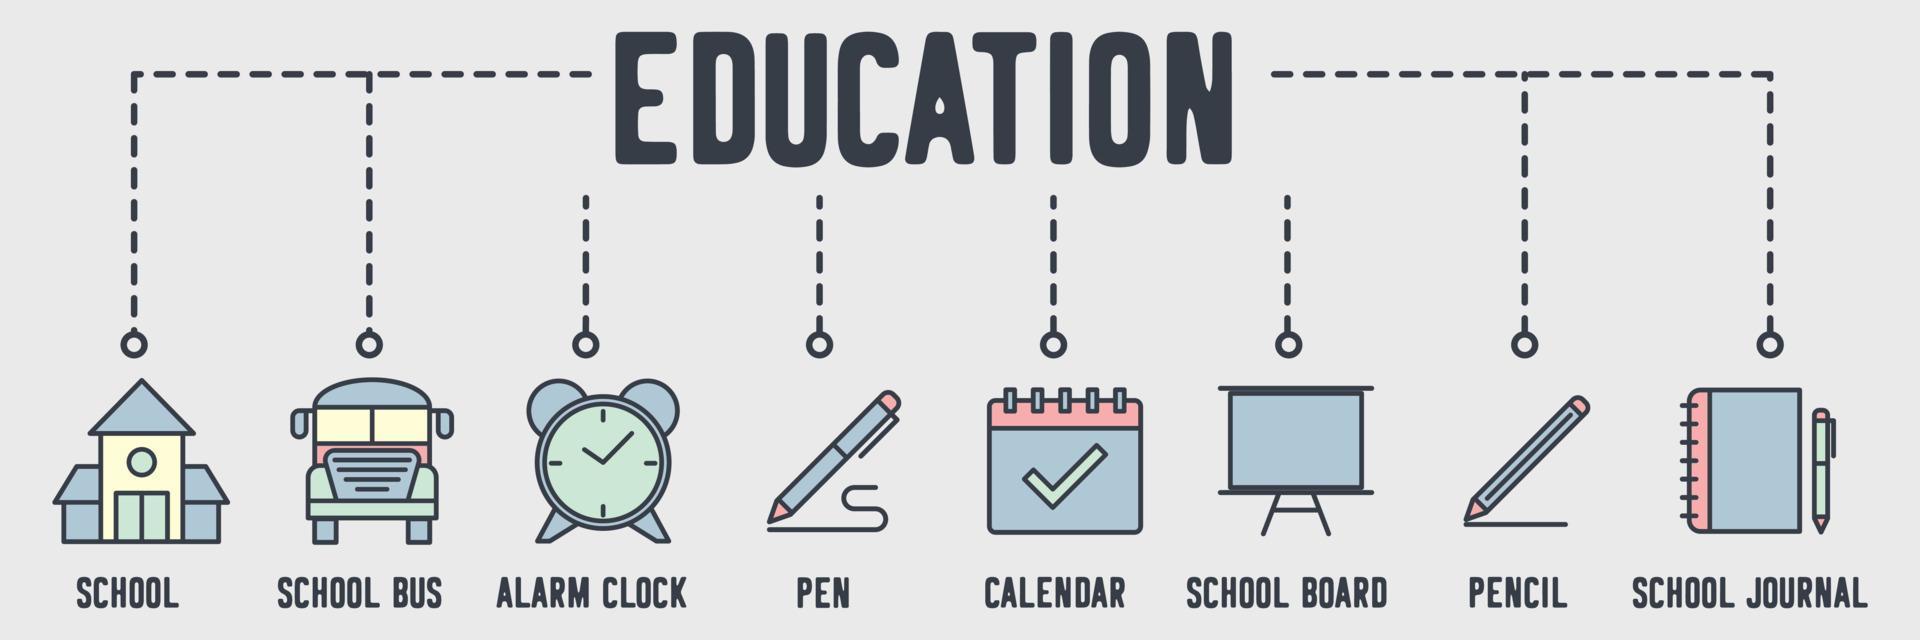 Education banner web icon. school, school bus, alarm clock, pen, calendar, school board, pencil, journal vector illustration concept.